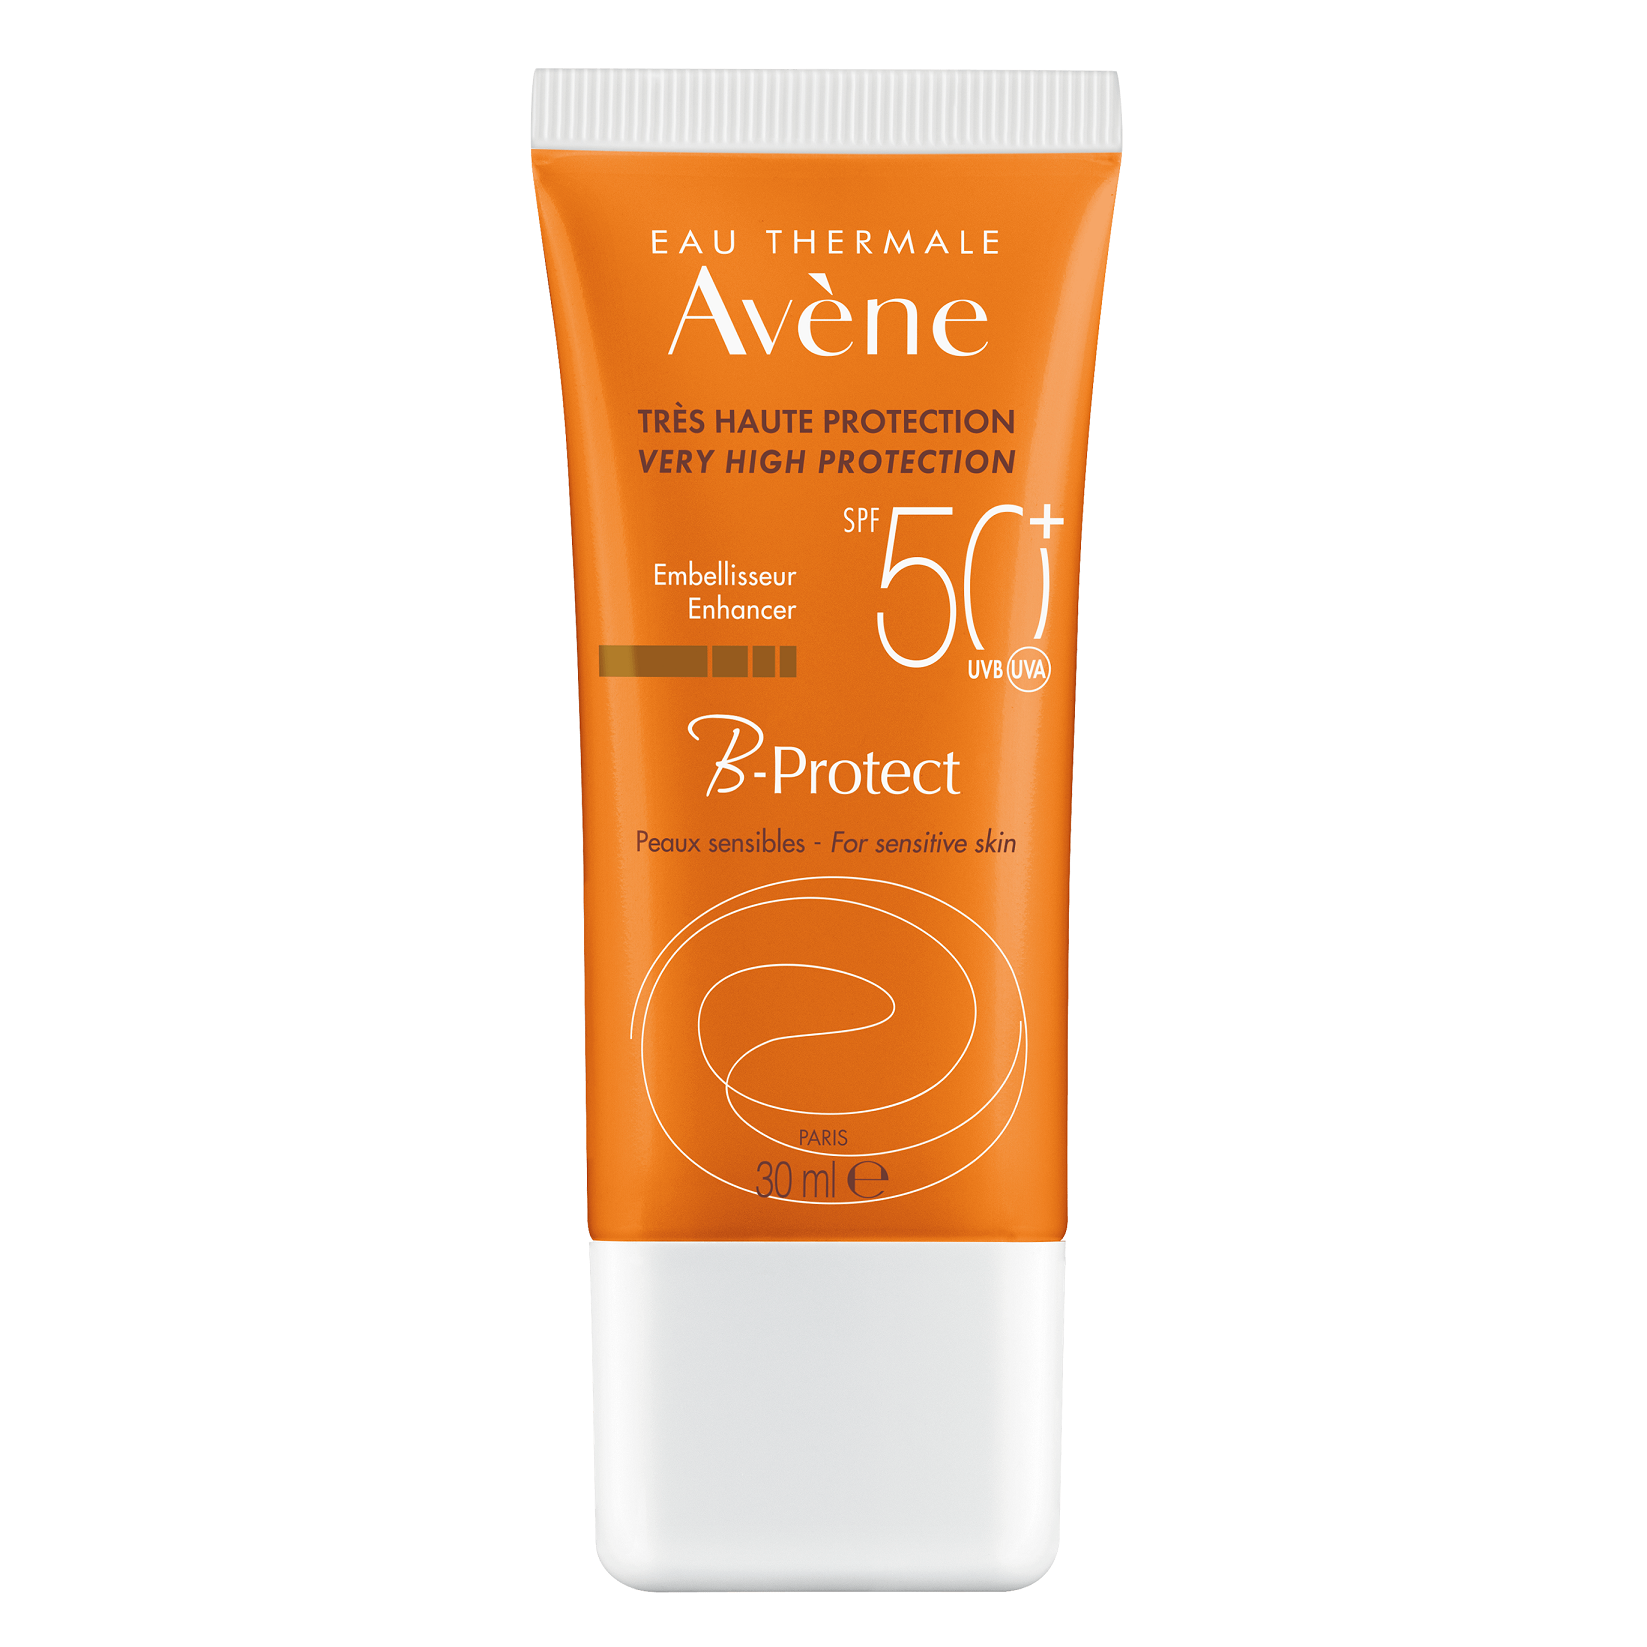 Сонцезахисний засіб для обличчя Avene B-Protect SPF50+, 30 мл (211130) - фото 1